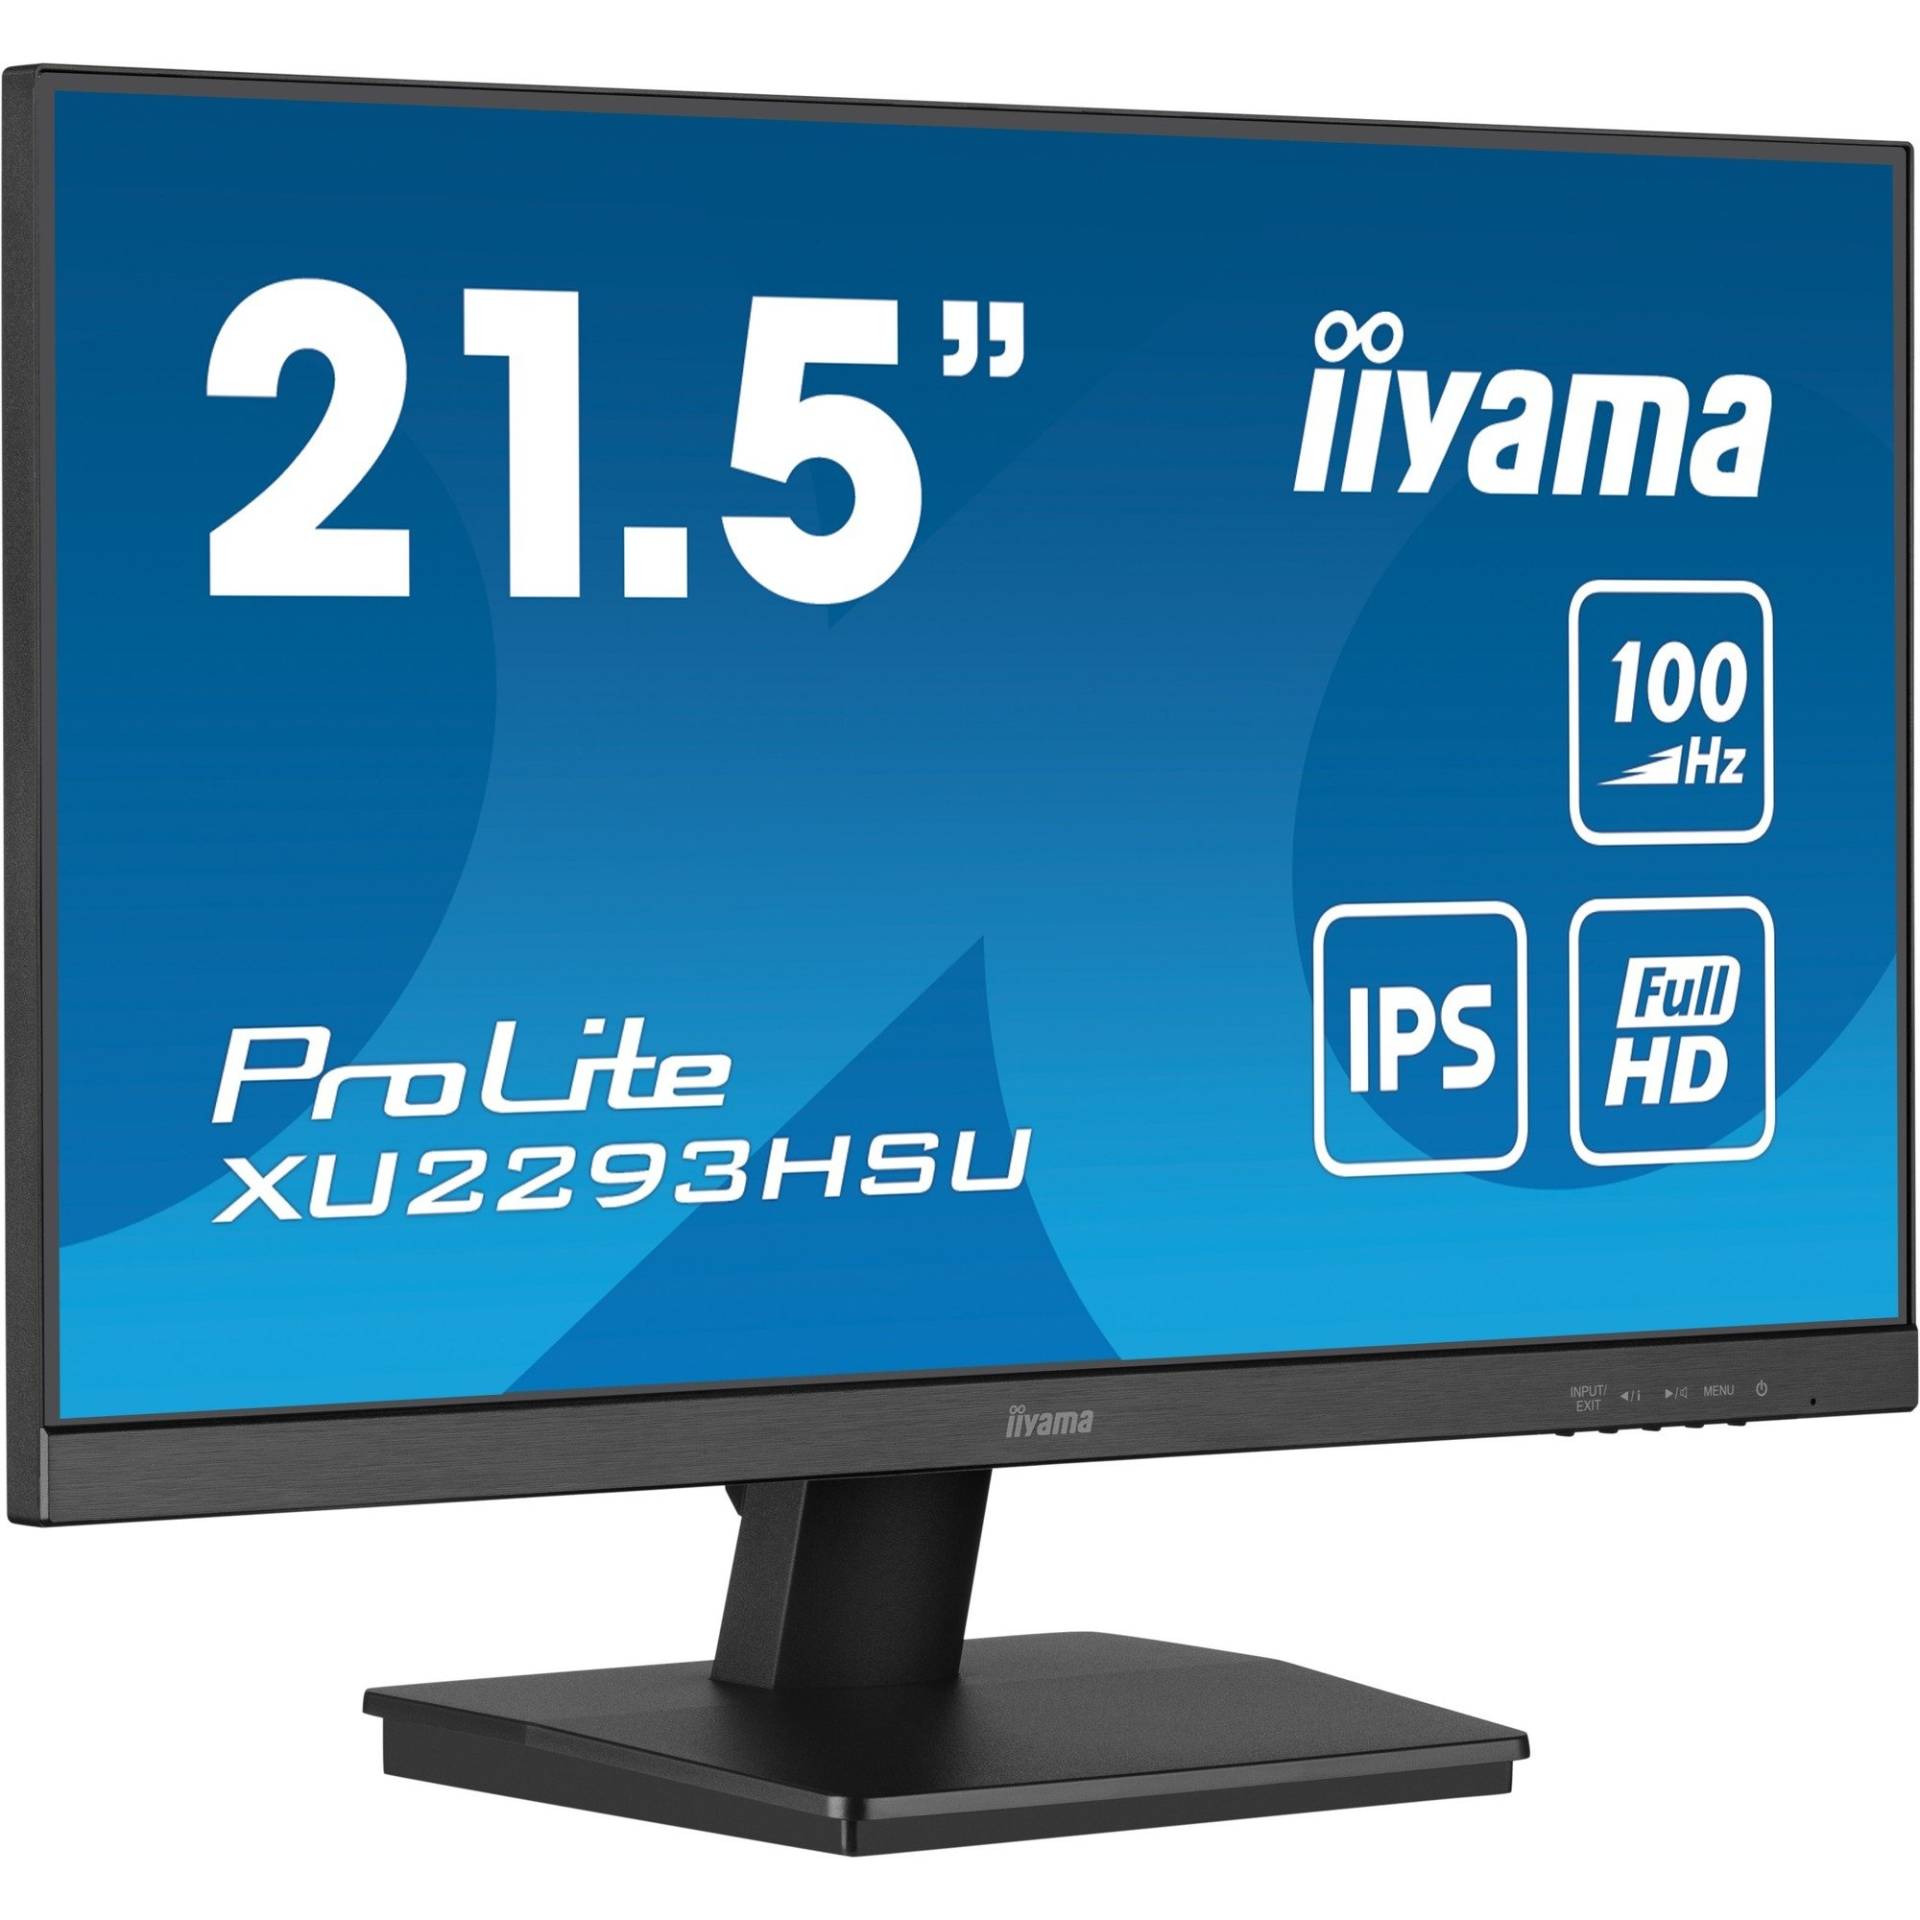 ProLite XU2293HSU-B6, LED-Monitor von Iiyama